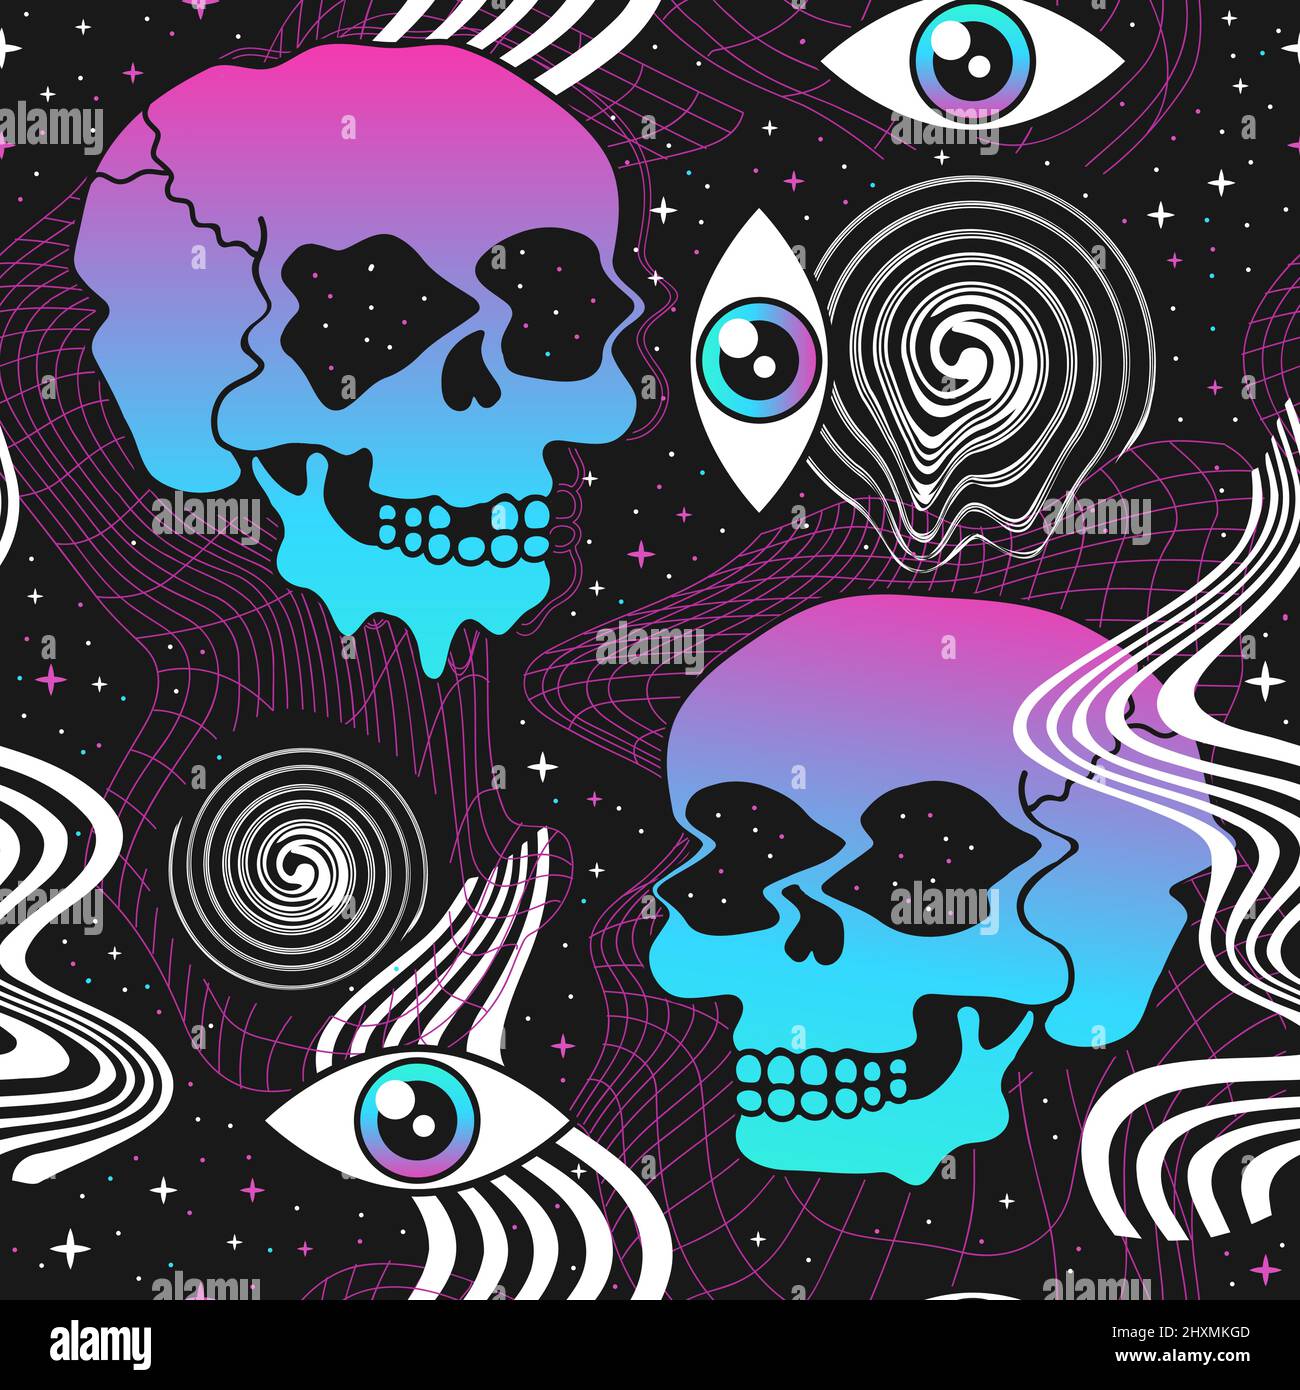 Pin by koko waite on SKULL LOVE  Skull art Skull wallpaper Skulls drawing